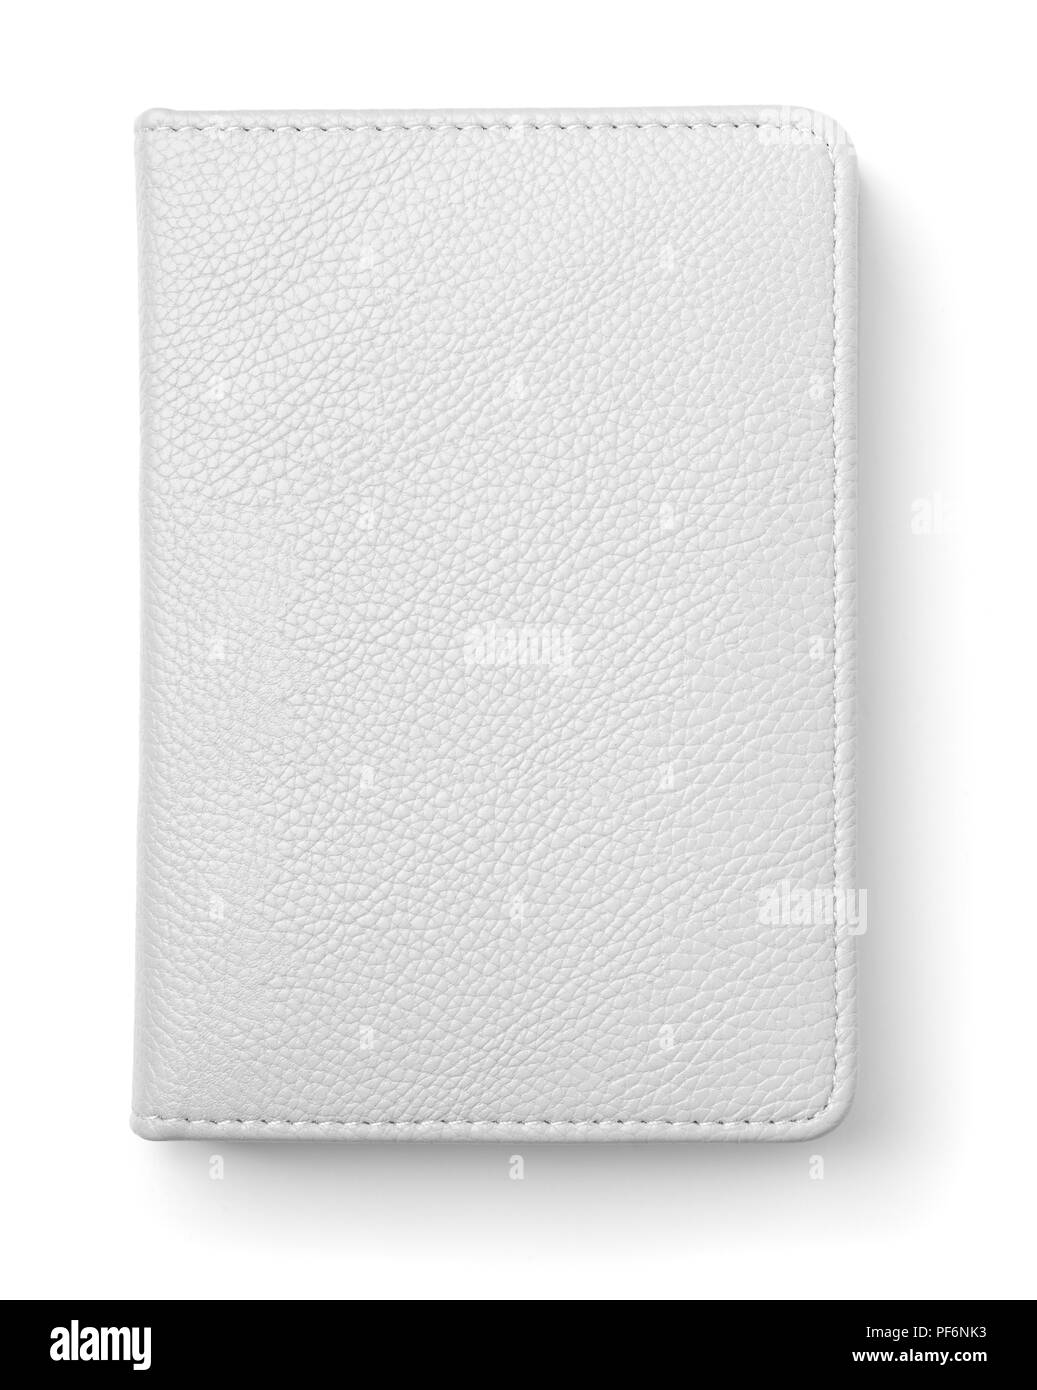 Vue de dessus de l'ordinateur portable en cuir blanc isolated on white Banque D'Images